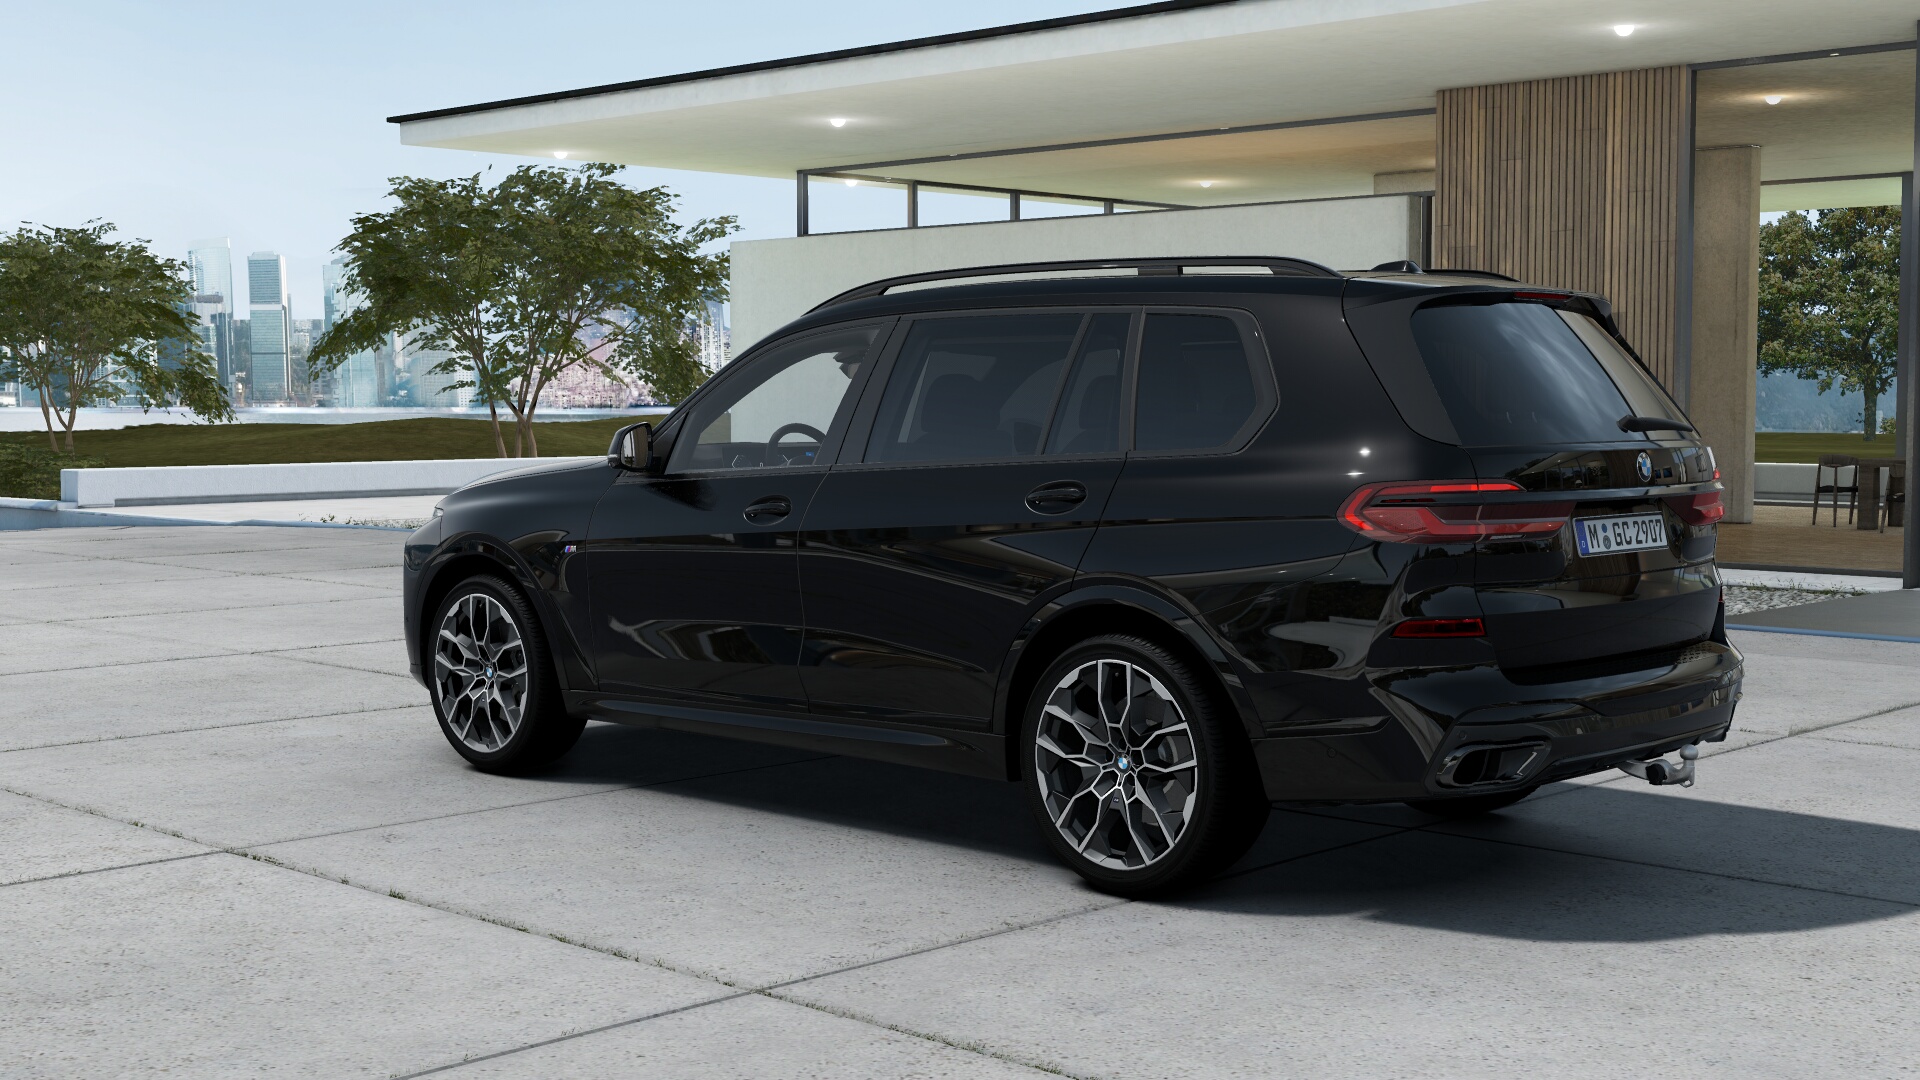 BMW X7 40d xDrive Msport | FACELIFT | nové auto skladem | přímo od českého autorizovaného prodejce | luxusní černé naftové SUV | hnědá kůže | maximální výbava | auto ihned k předání | super cena 2.659.000,- Kč bez DPH | více info a nákup online na AUTOiBUY.com